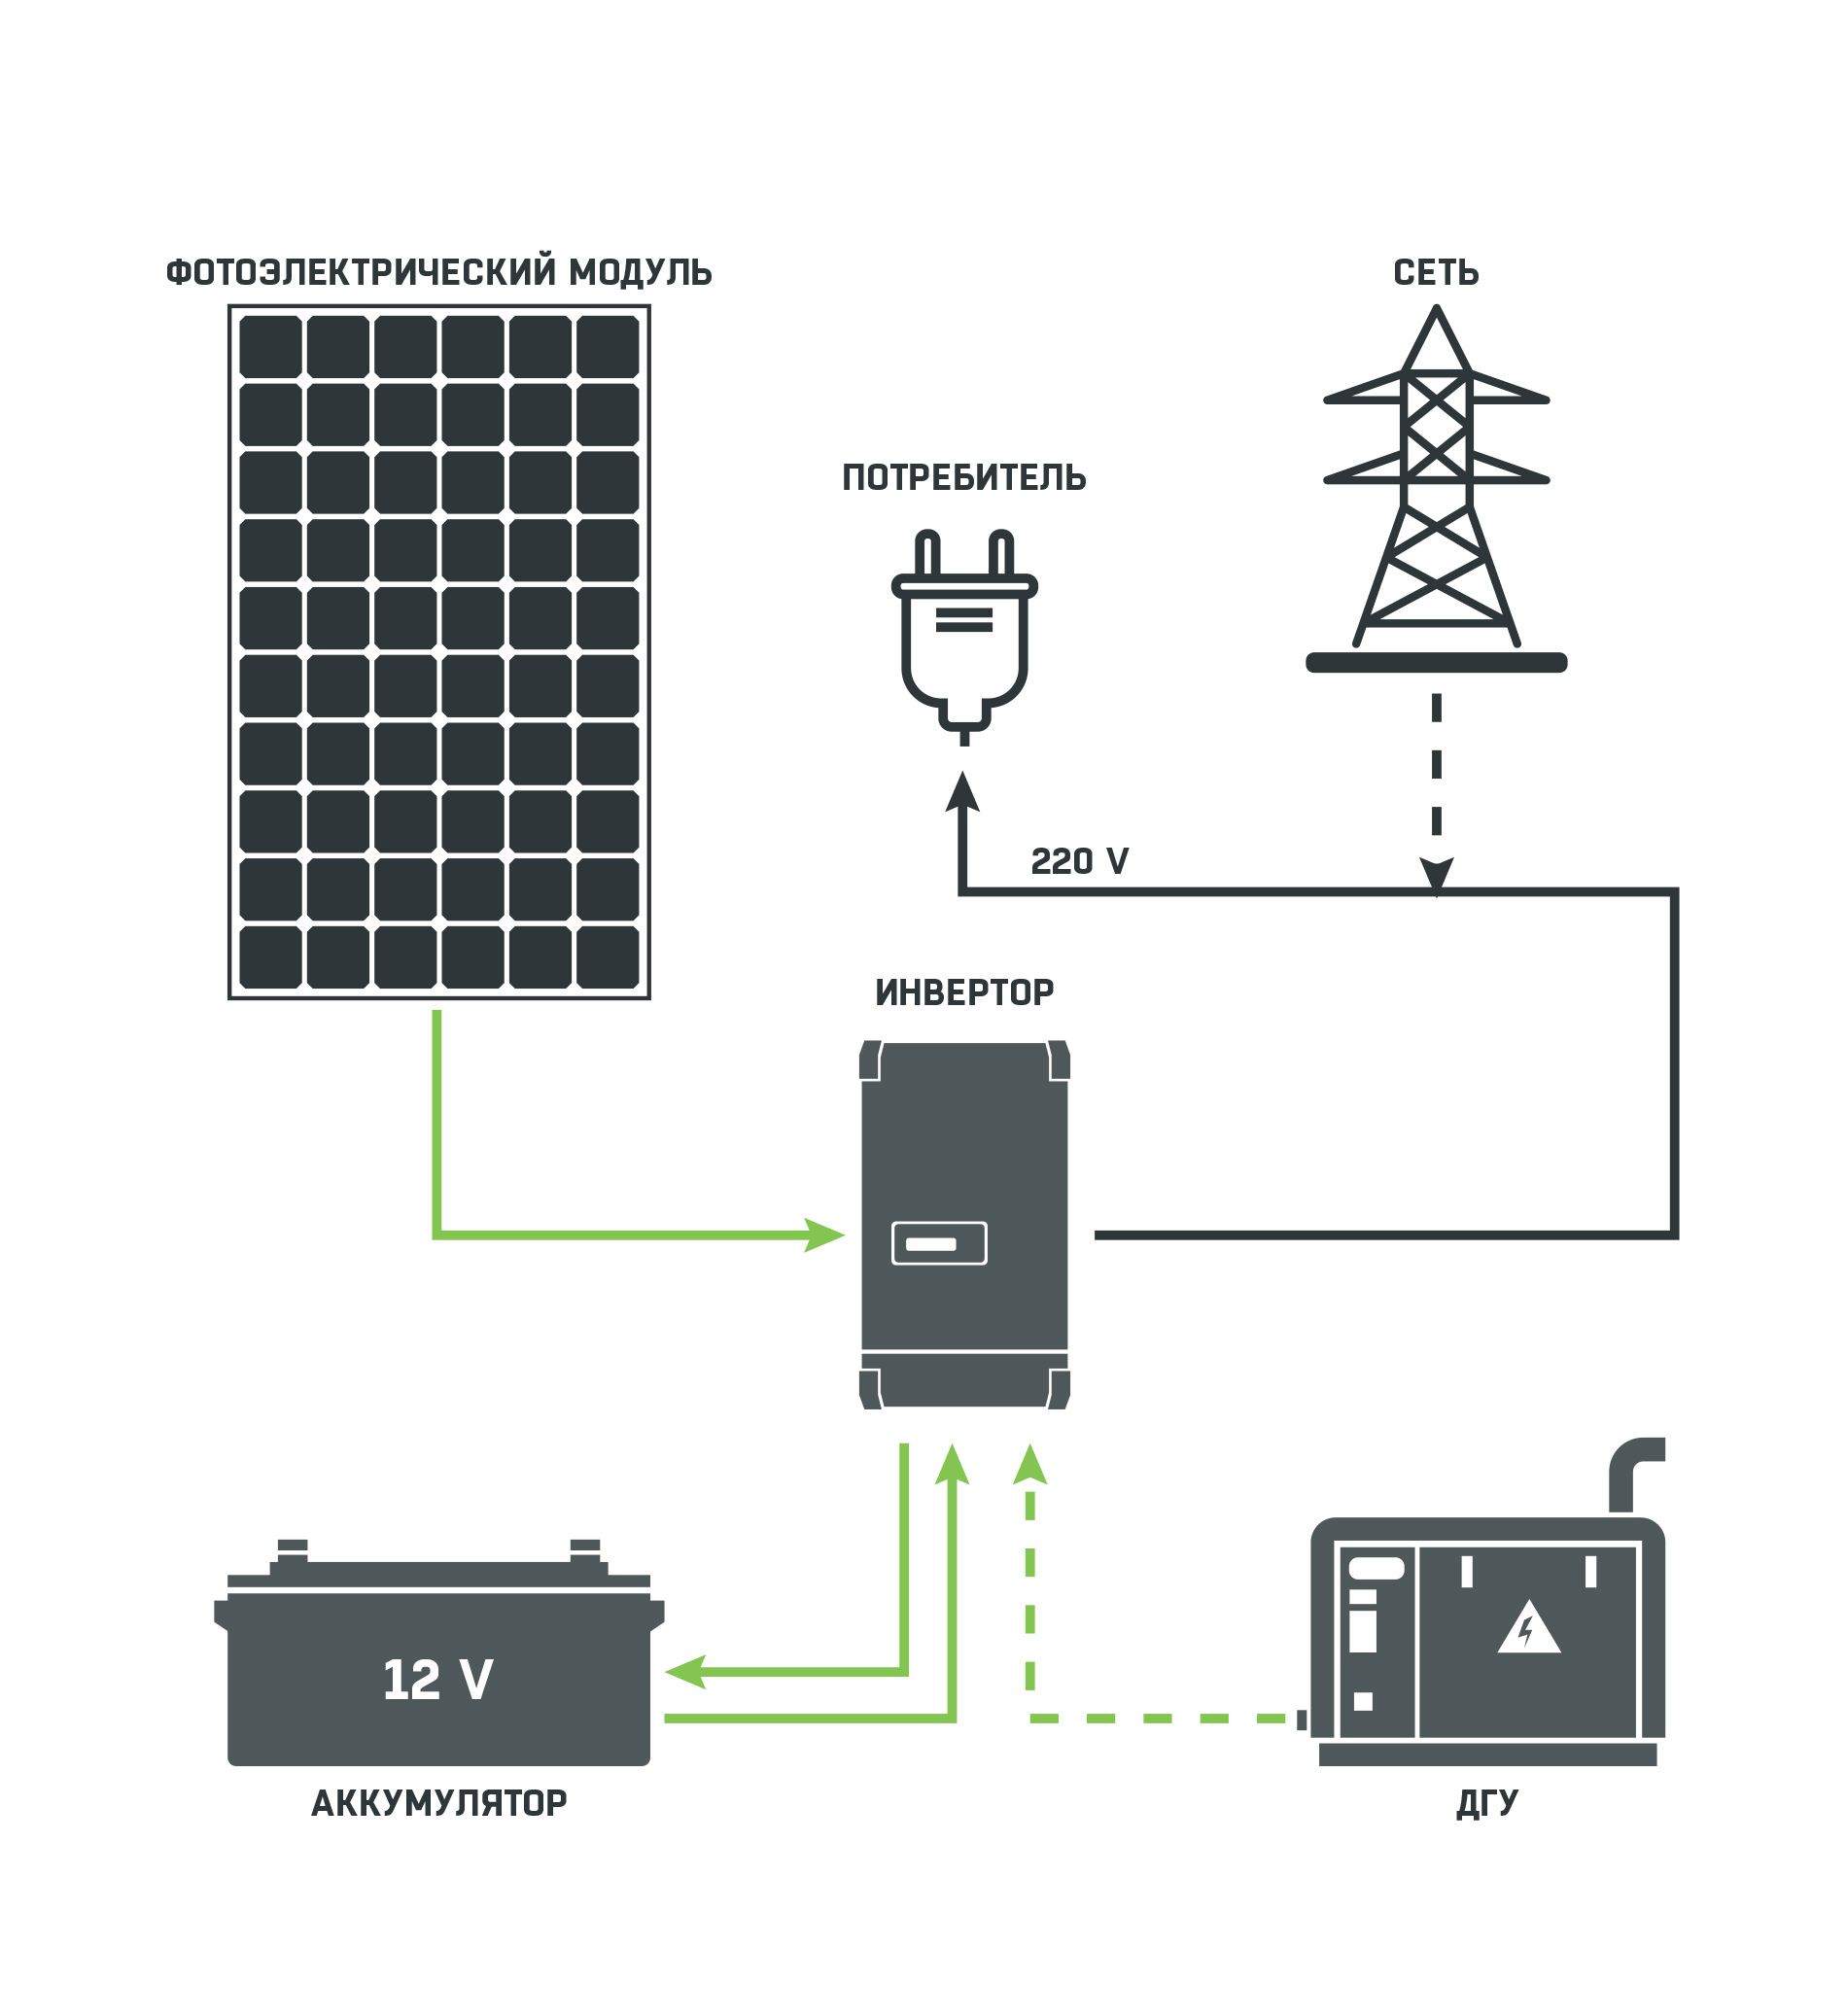 Autonomous solar power plant A7